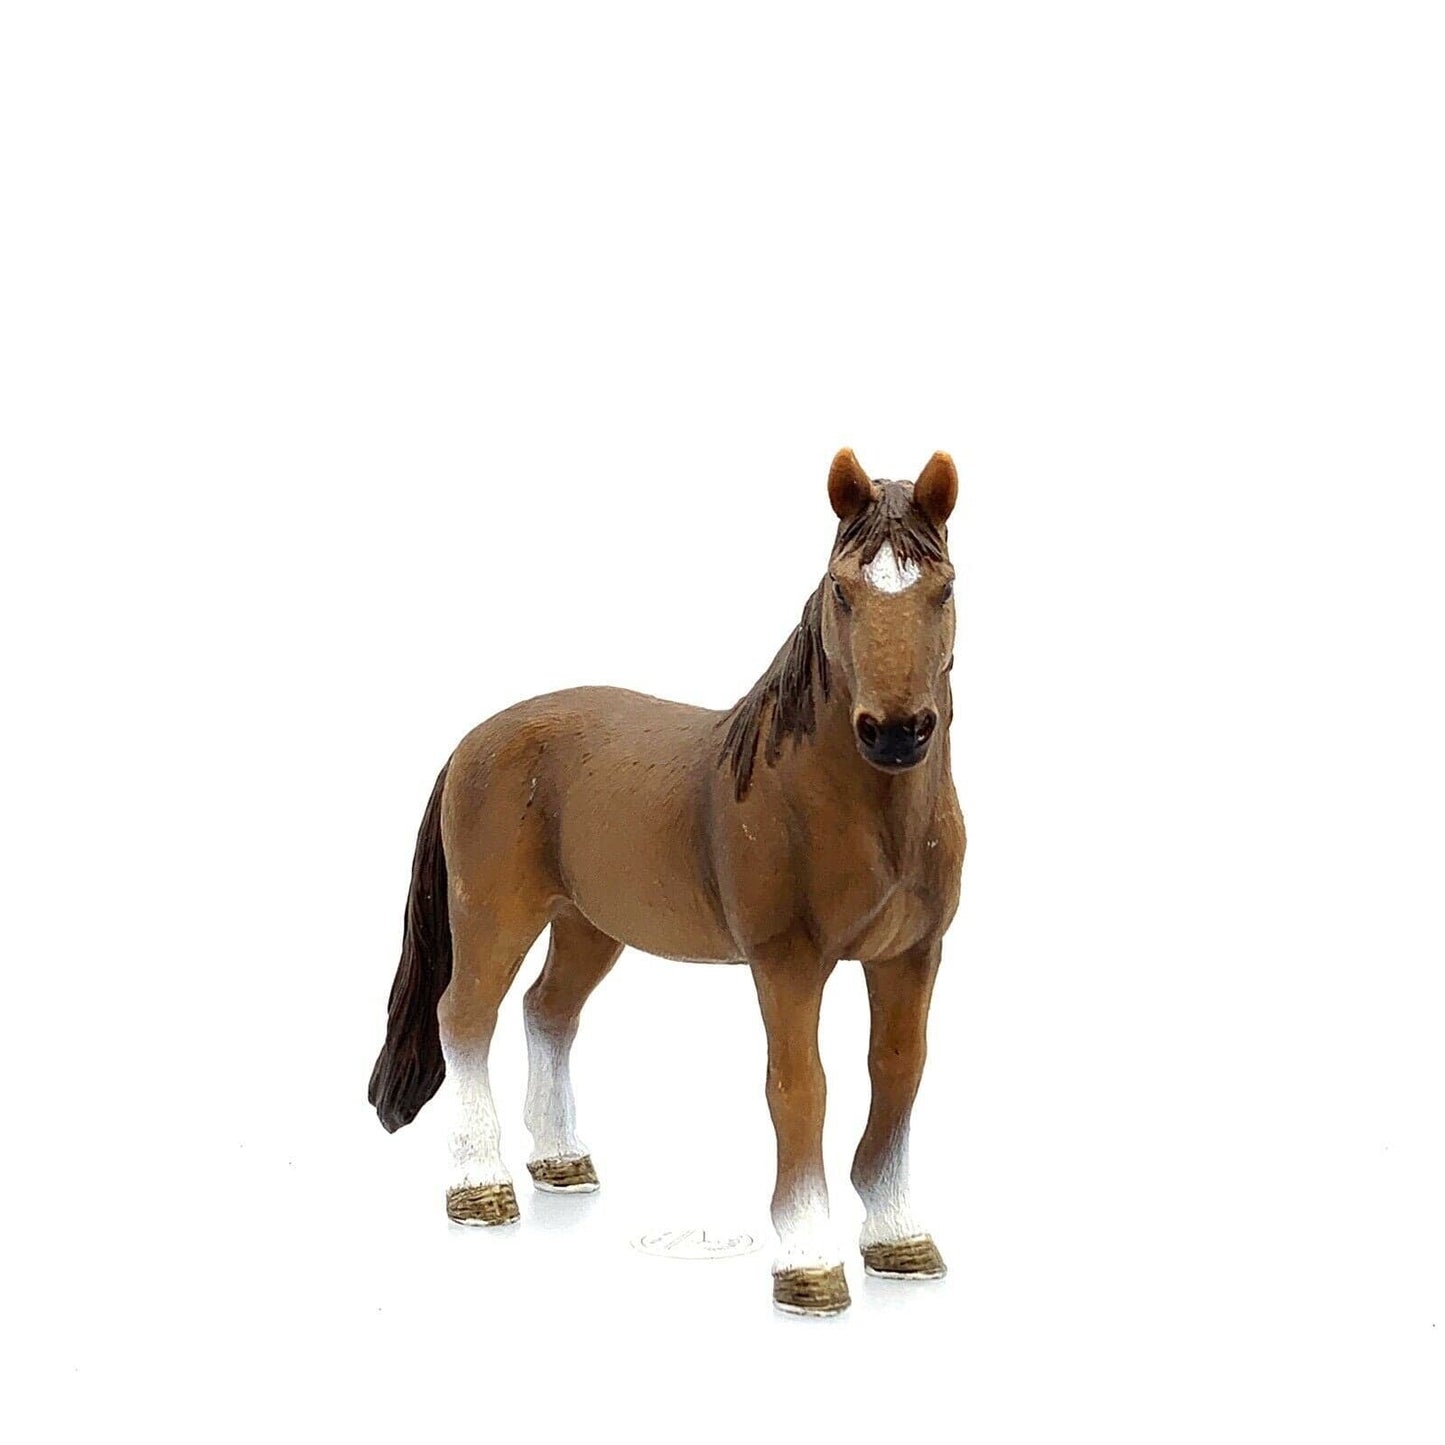 Schleich Tennesee Walker Mare Horse Model, Brown - Retired 2012